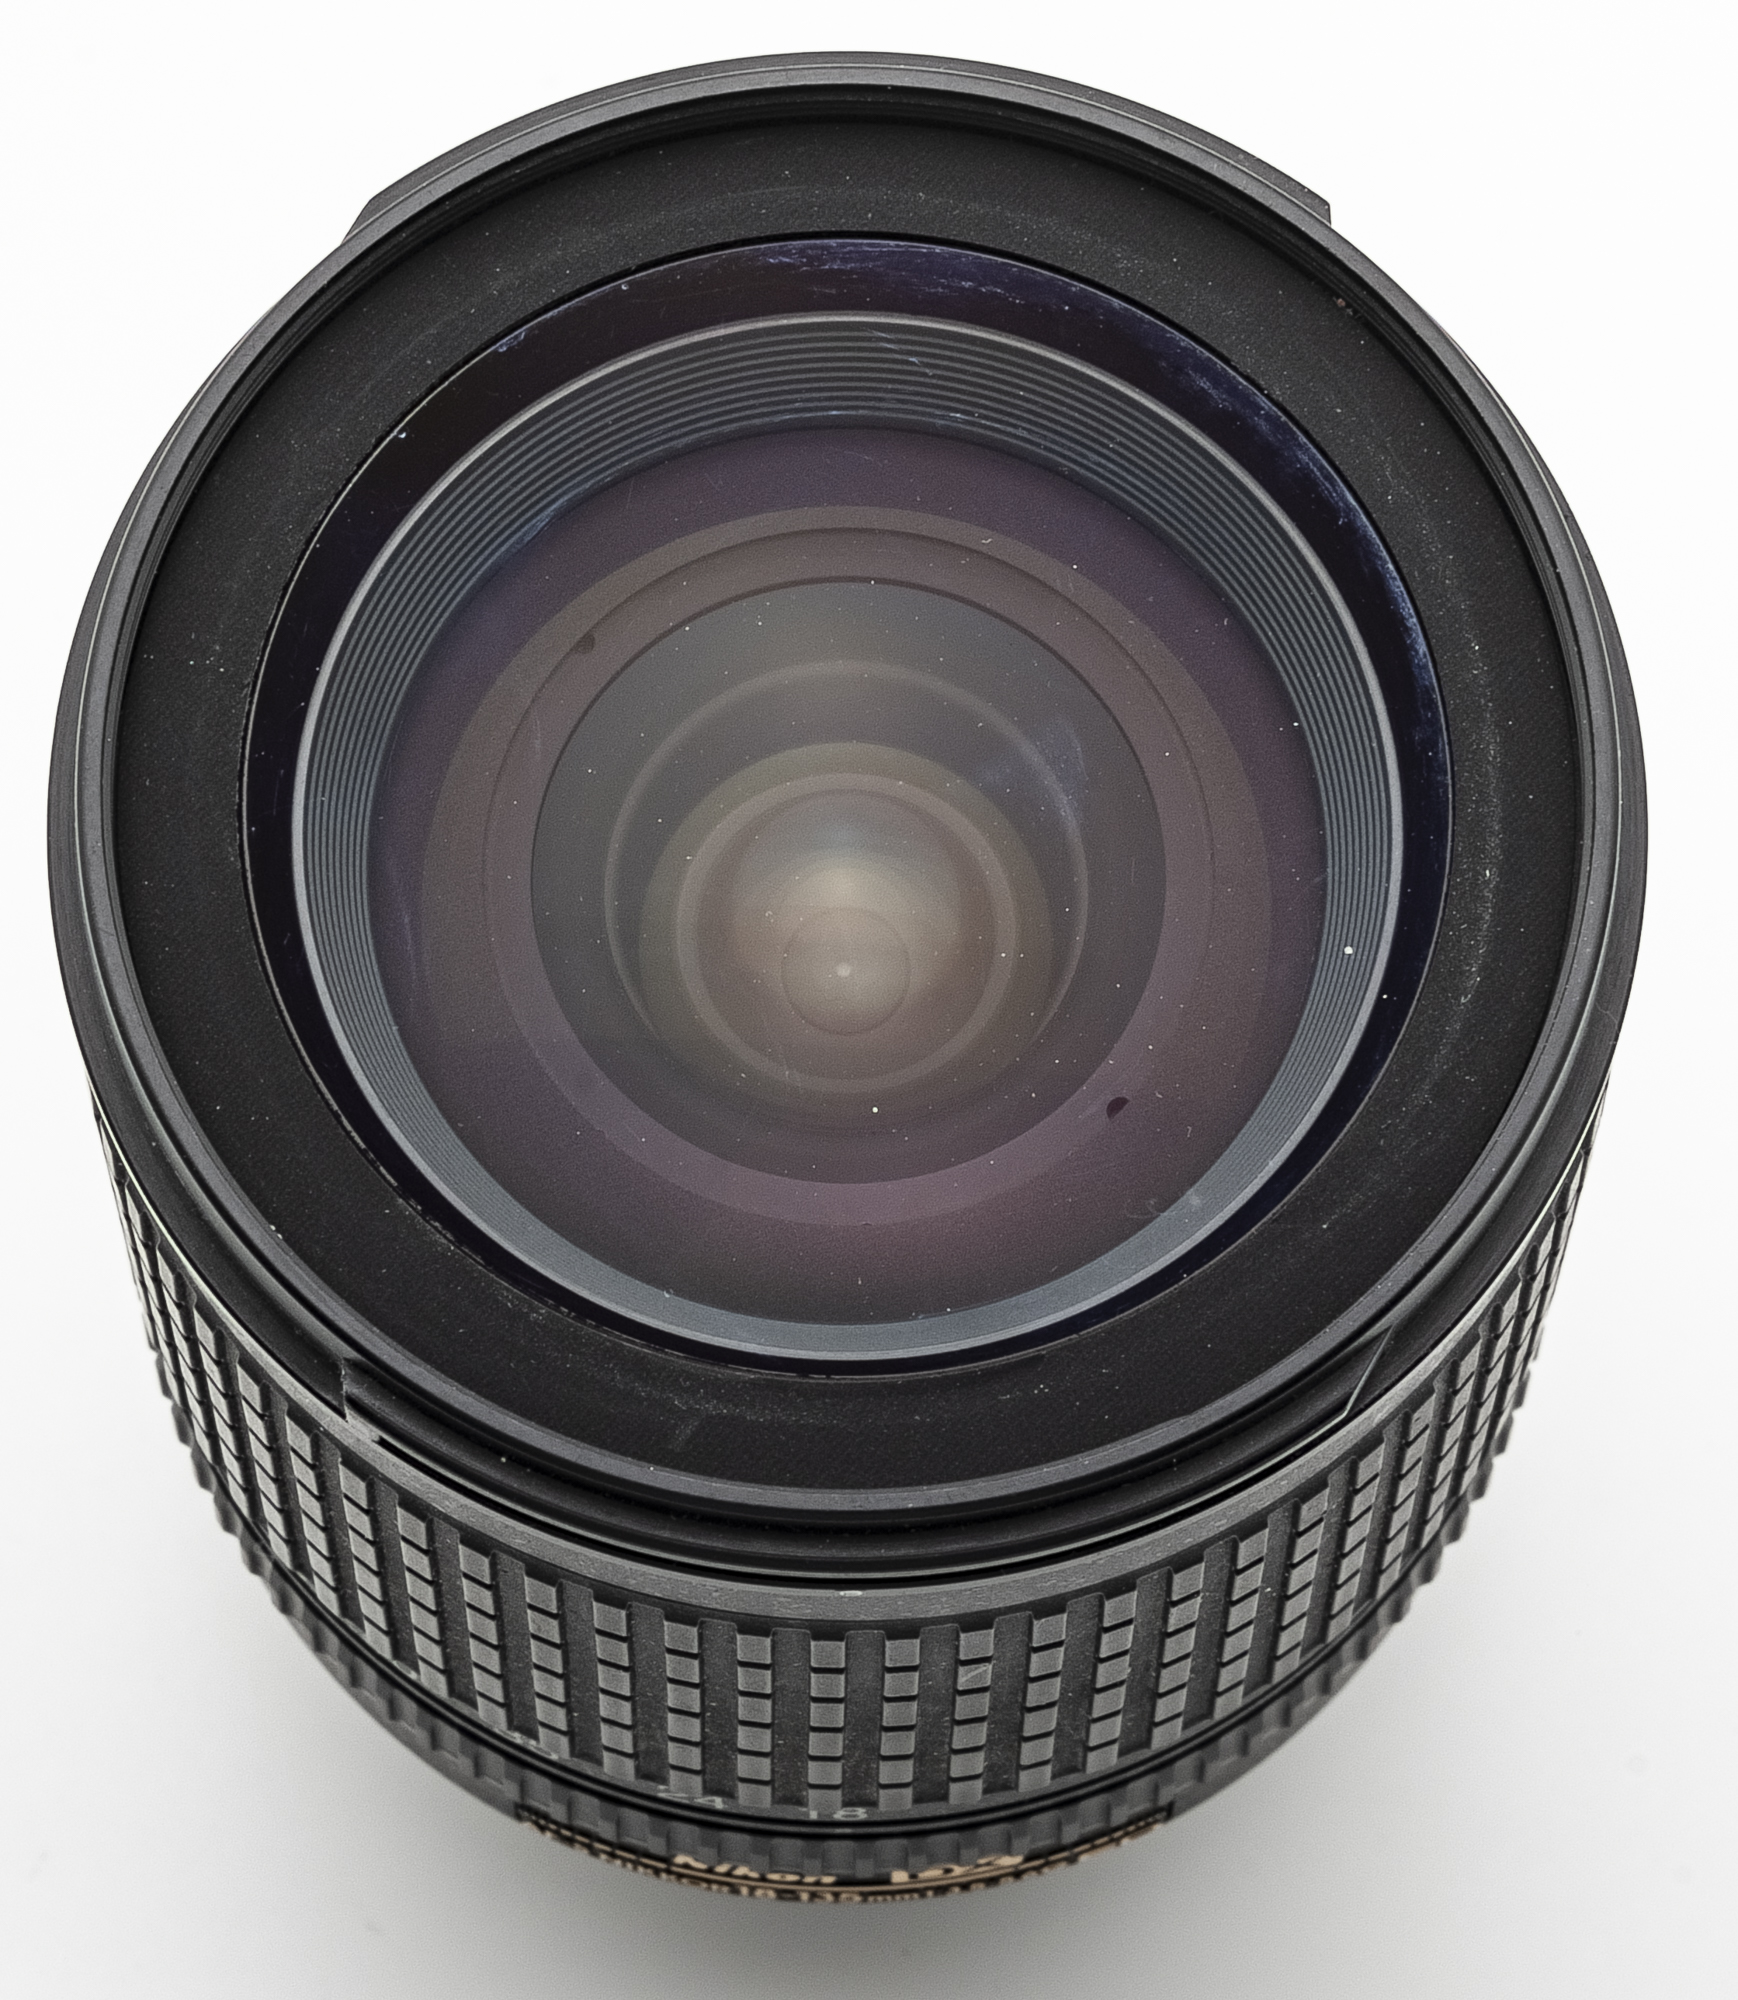 Nikon DX AF-S Nikkor 18-135mm 18-135 mm 3.5-5.6 G SWM ED IF Aspherical